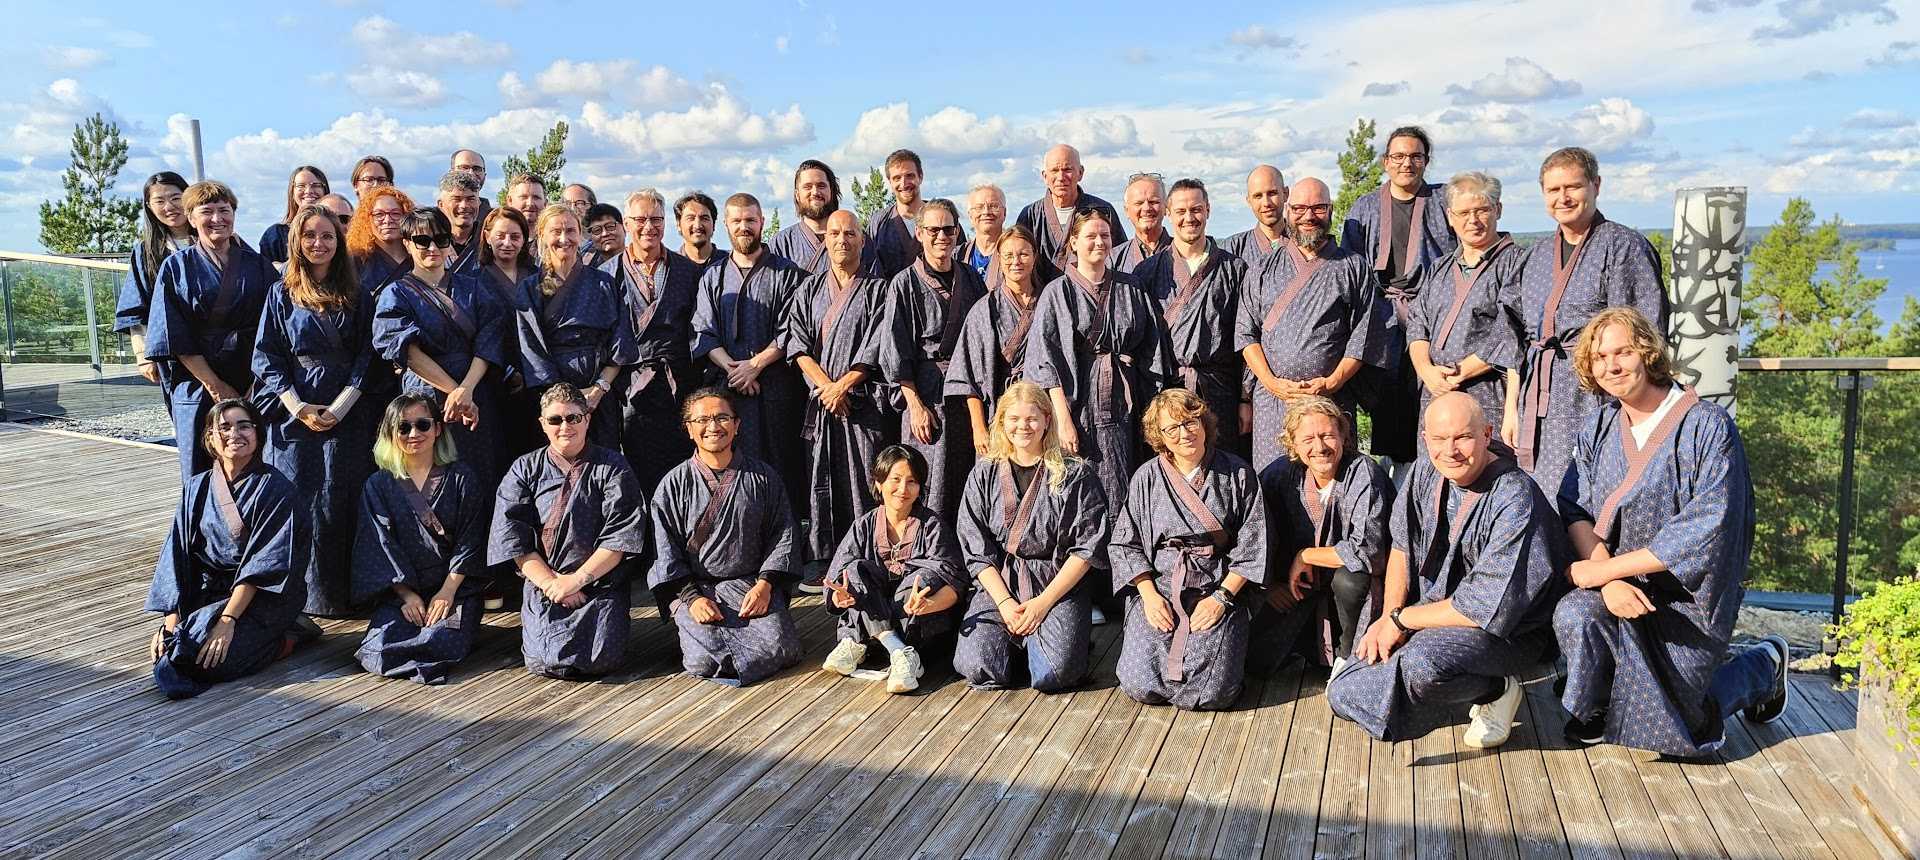 MID staff at Yasuragi, Stockholm